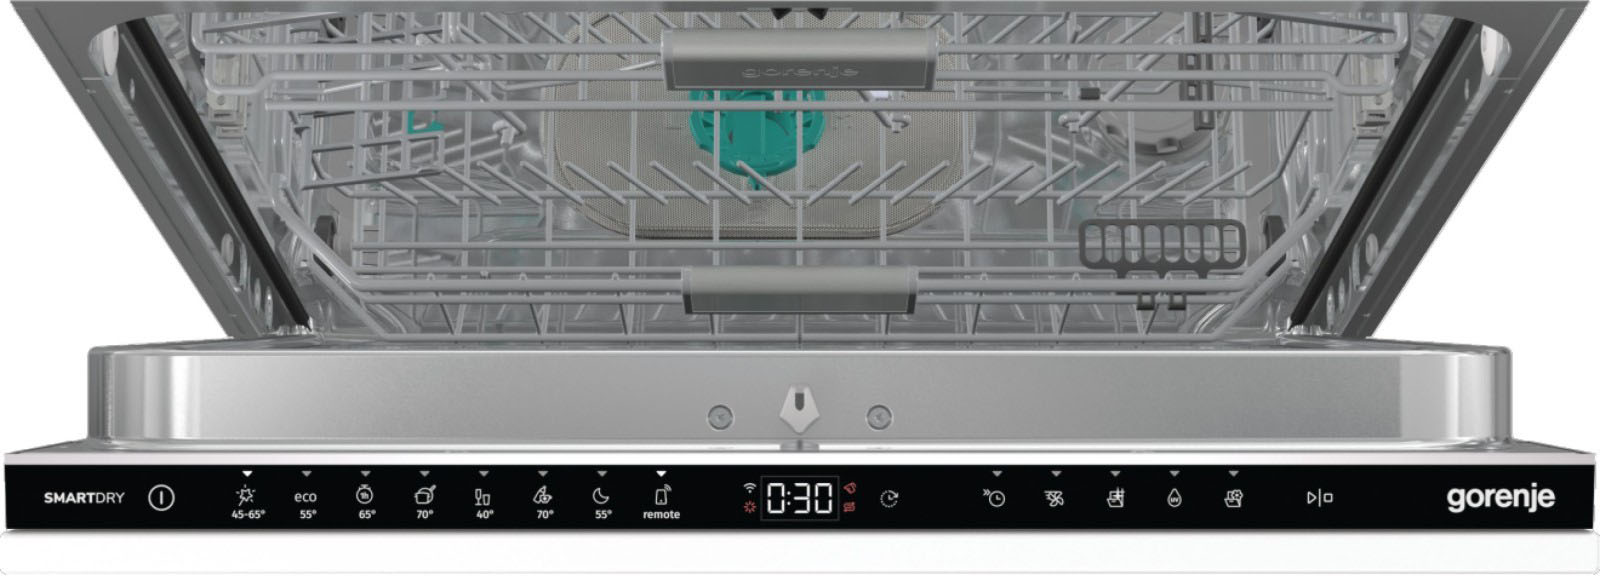 Посудомоечная машина Gorenje GV693C60UV инструкция - изображение 6